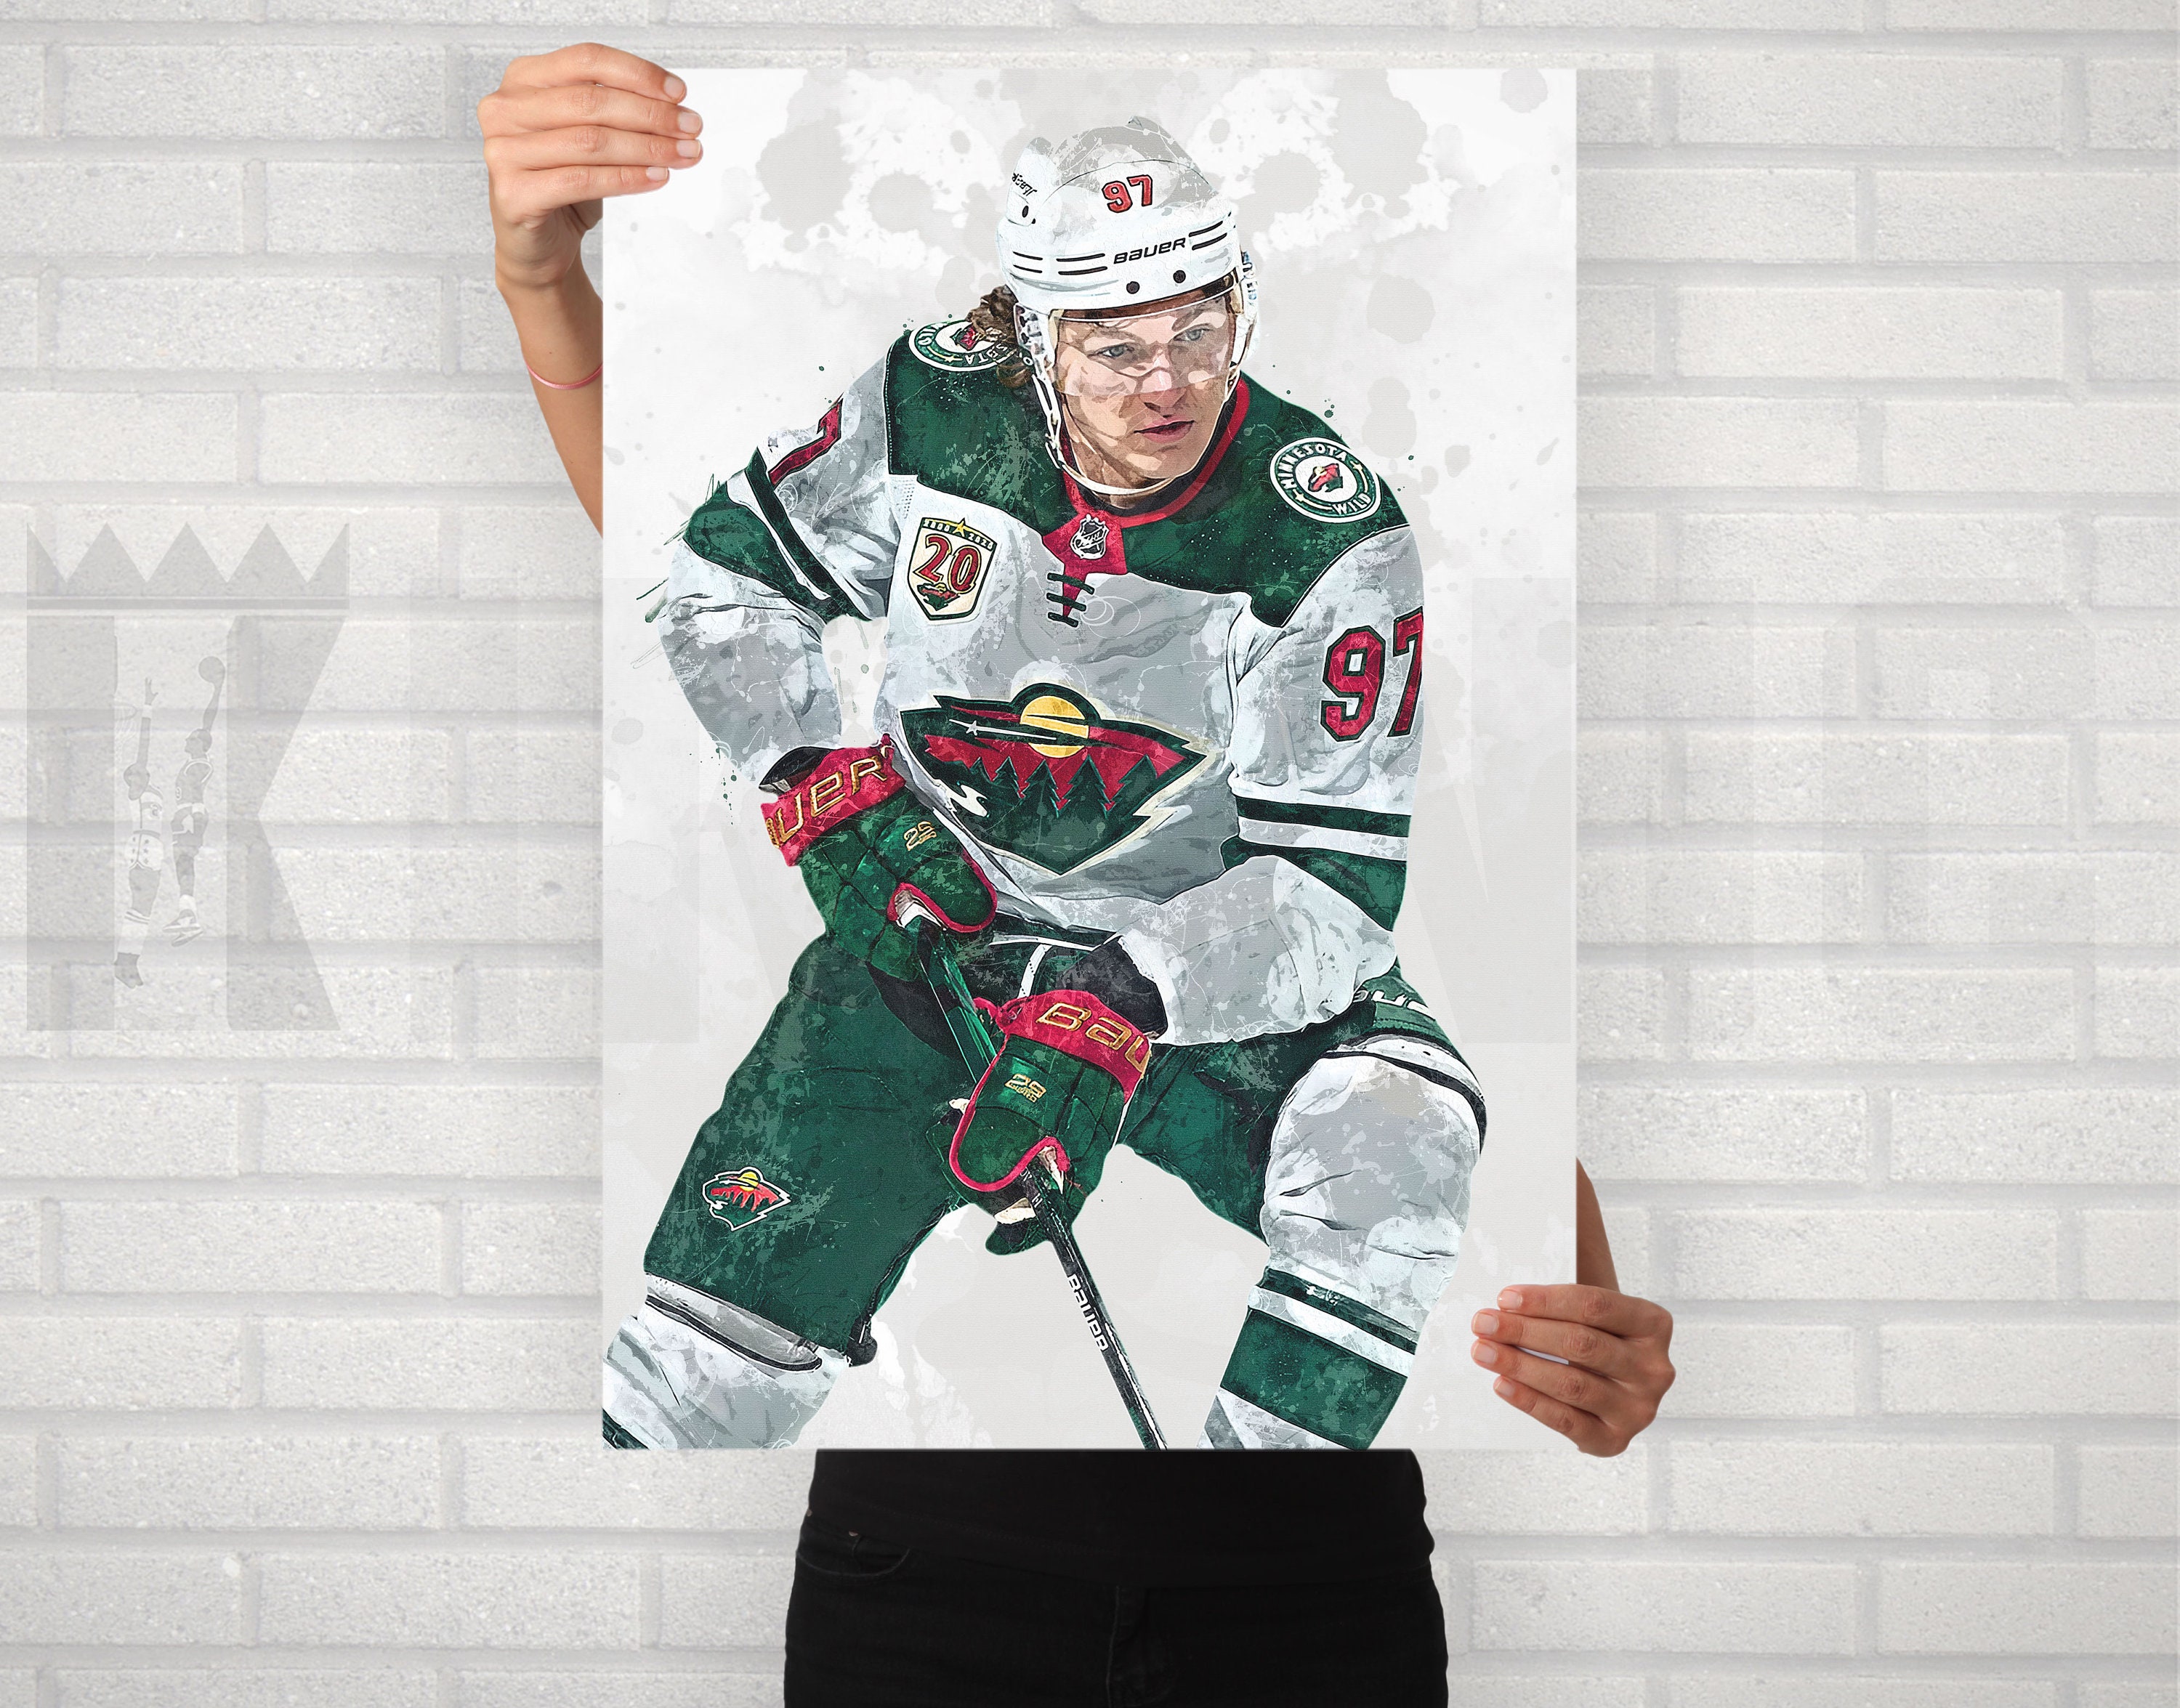 Kirill Kaprizov: Caricature, Adult T-Shirt / Extra Large - NHL - Sports Fan Gear | breakingt